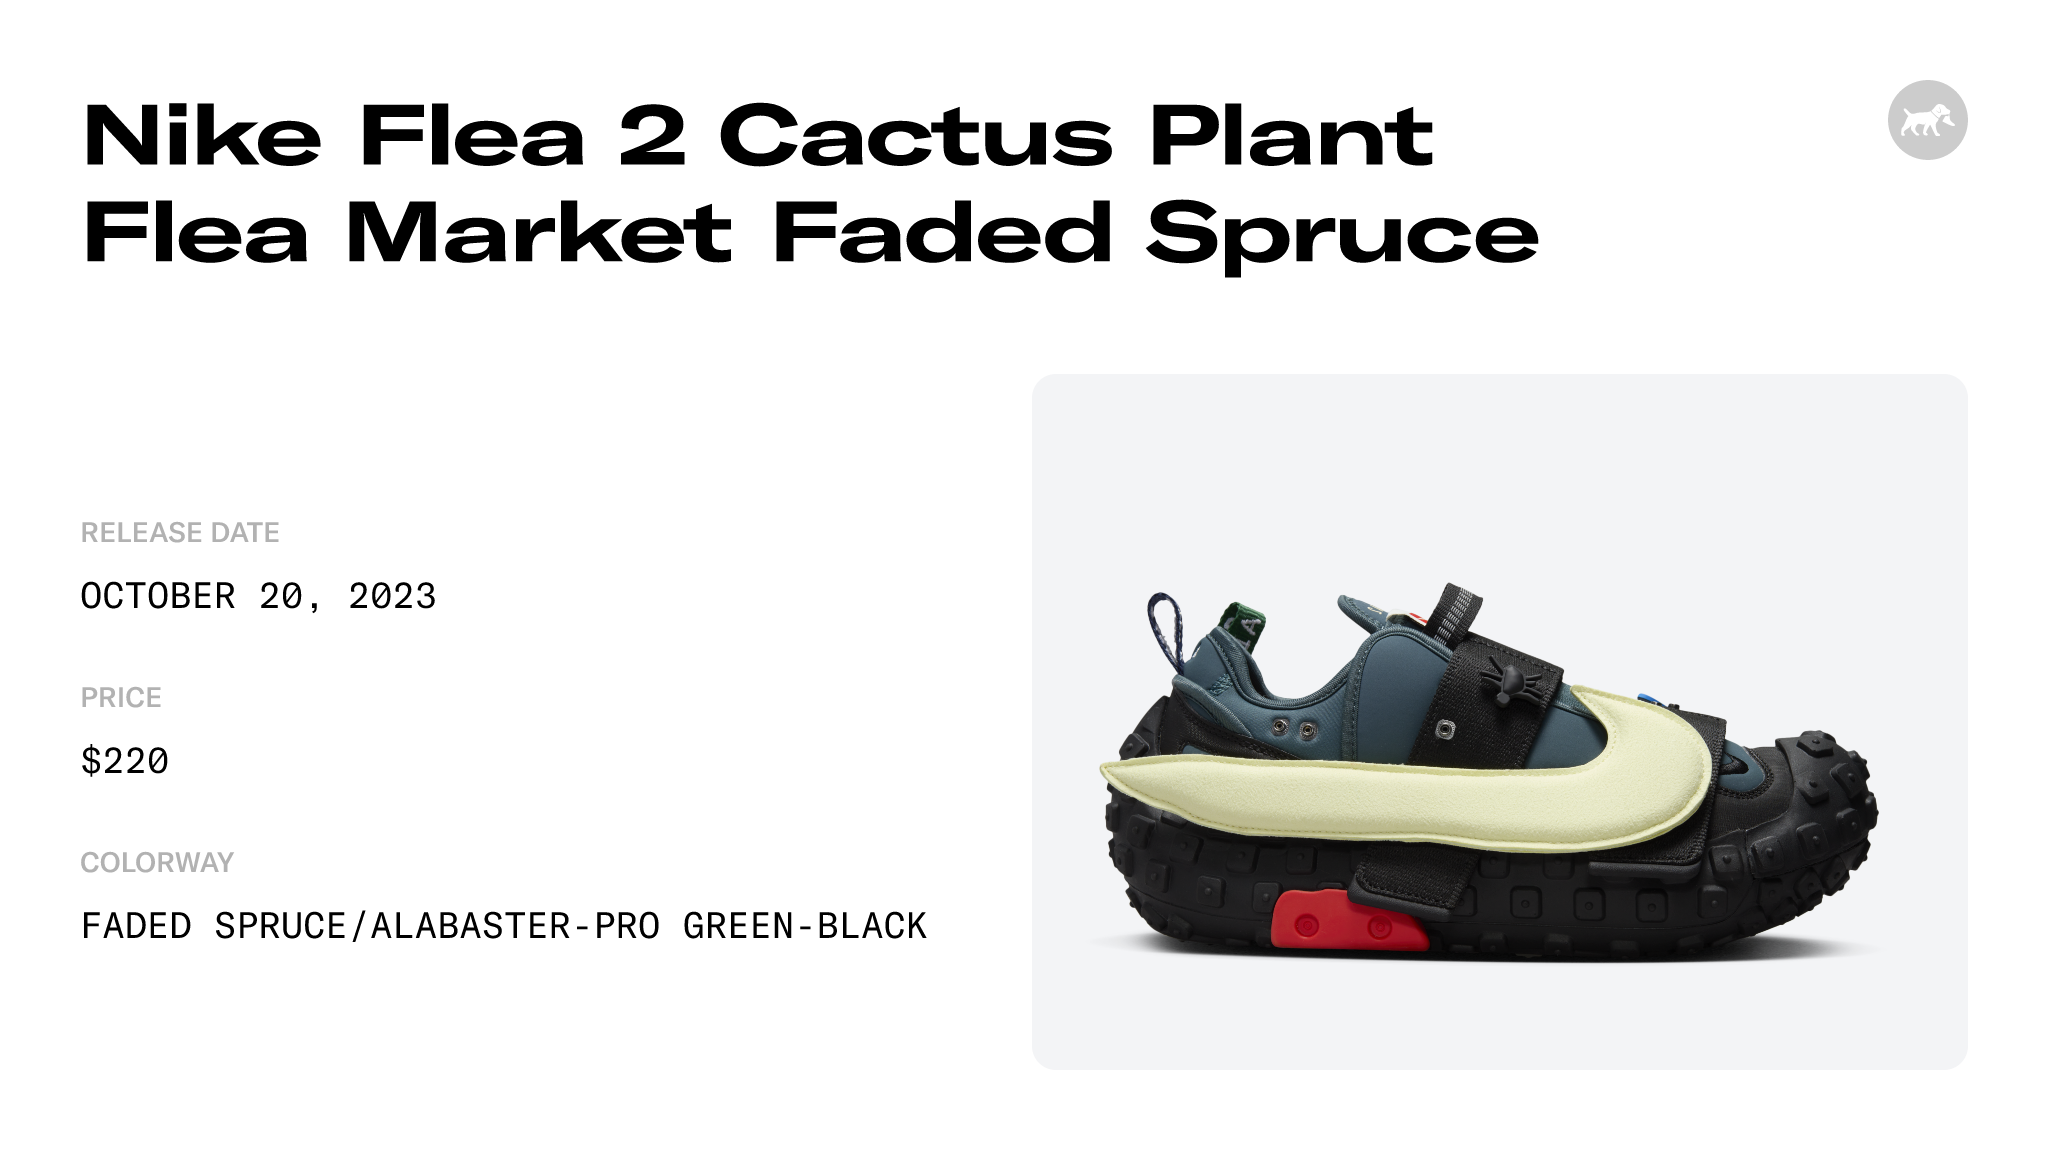 Cactus Plant Flea Market x Dunk Low Sign-Ups Are Live